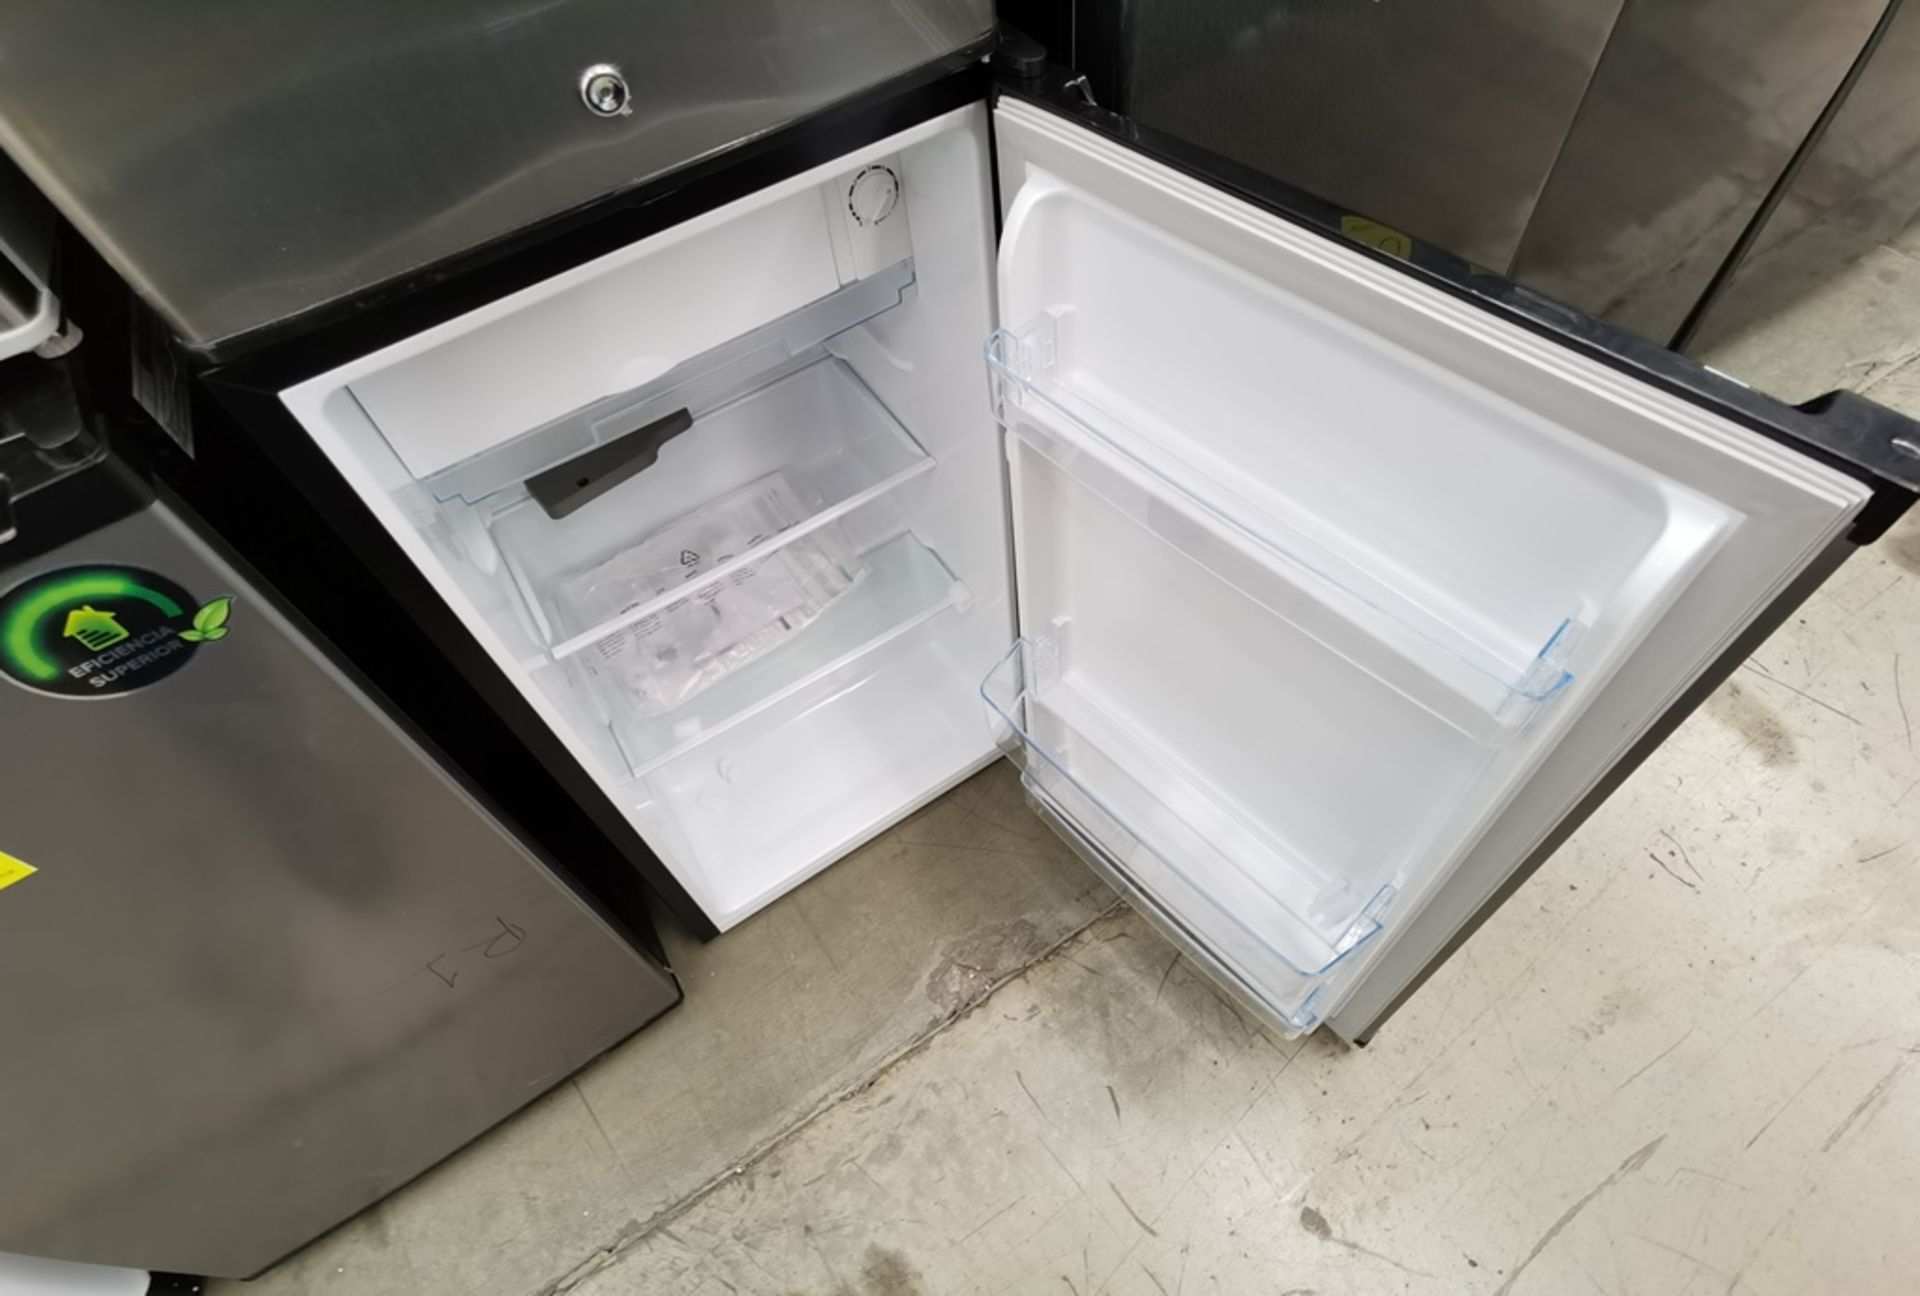 Lote De 4 Refrigeradores Contiene: 1 Refrigerador Marca Atvio, Modelo BC90SU, Serie N/D, Color Gris - Image 8 of 11